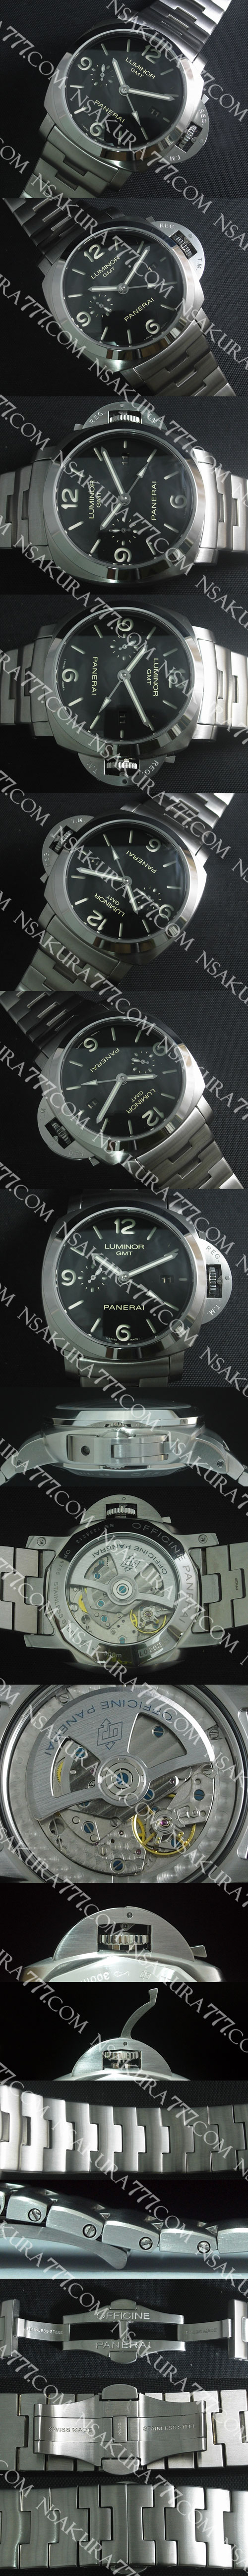 レプリカ時計パネライ ルミノール マリーナ PAM00352 Asian 7750搭載 - ウインドウを閉じる